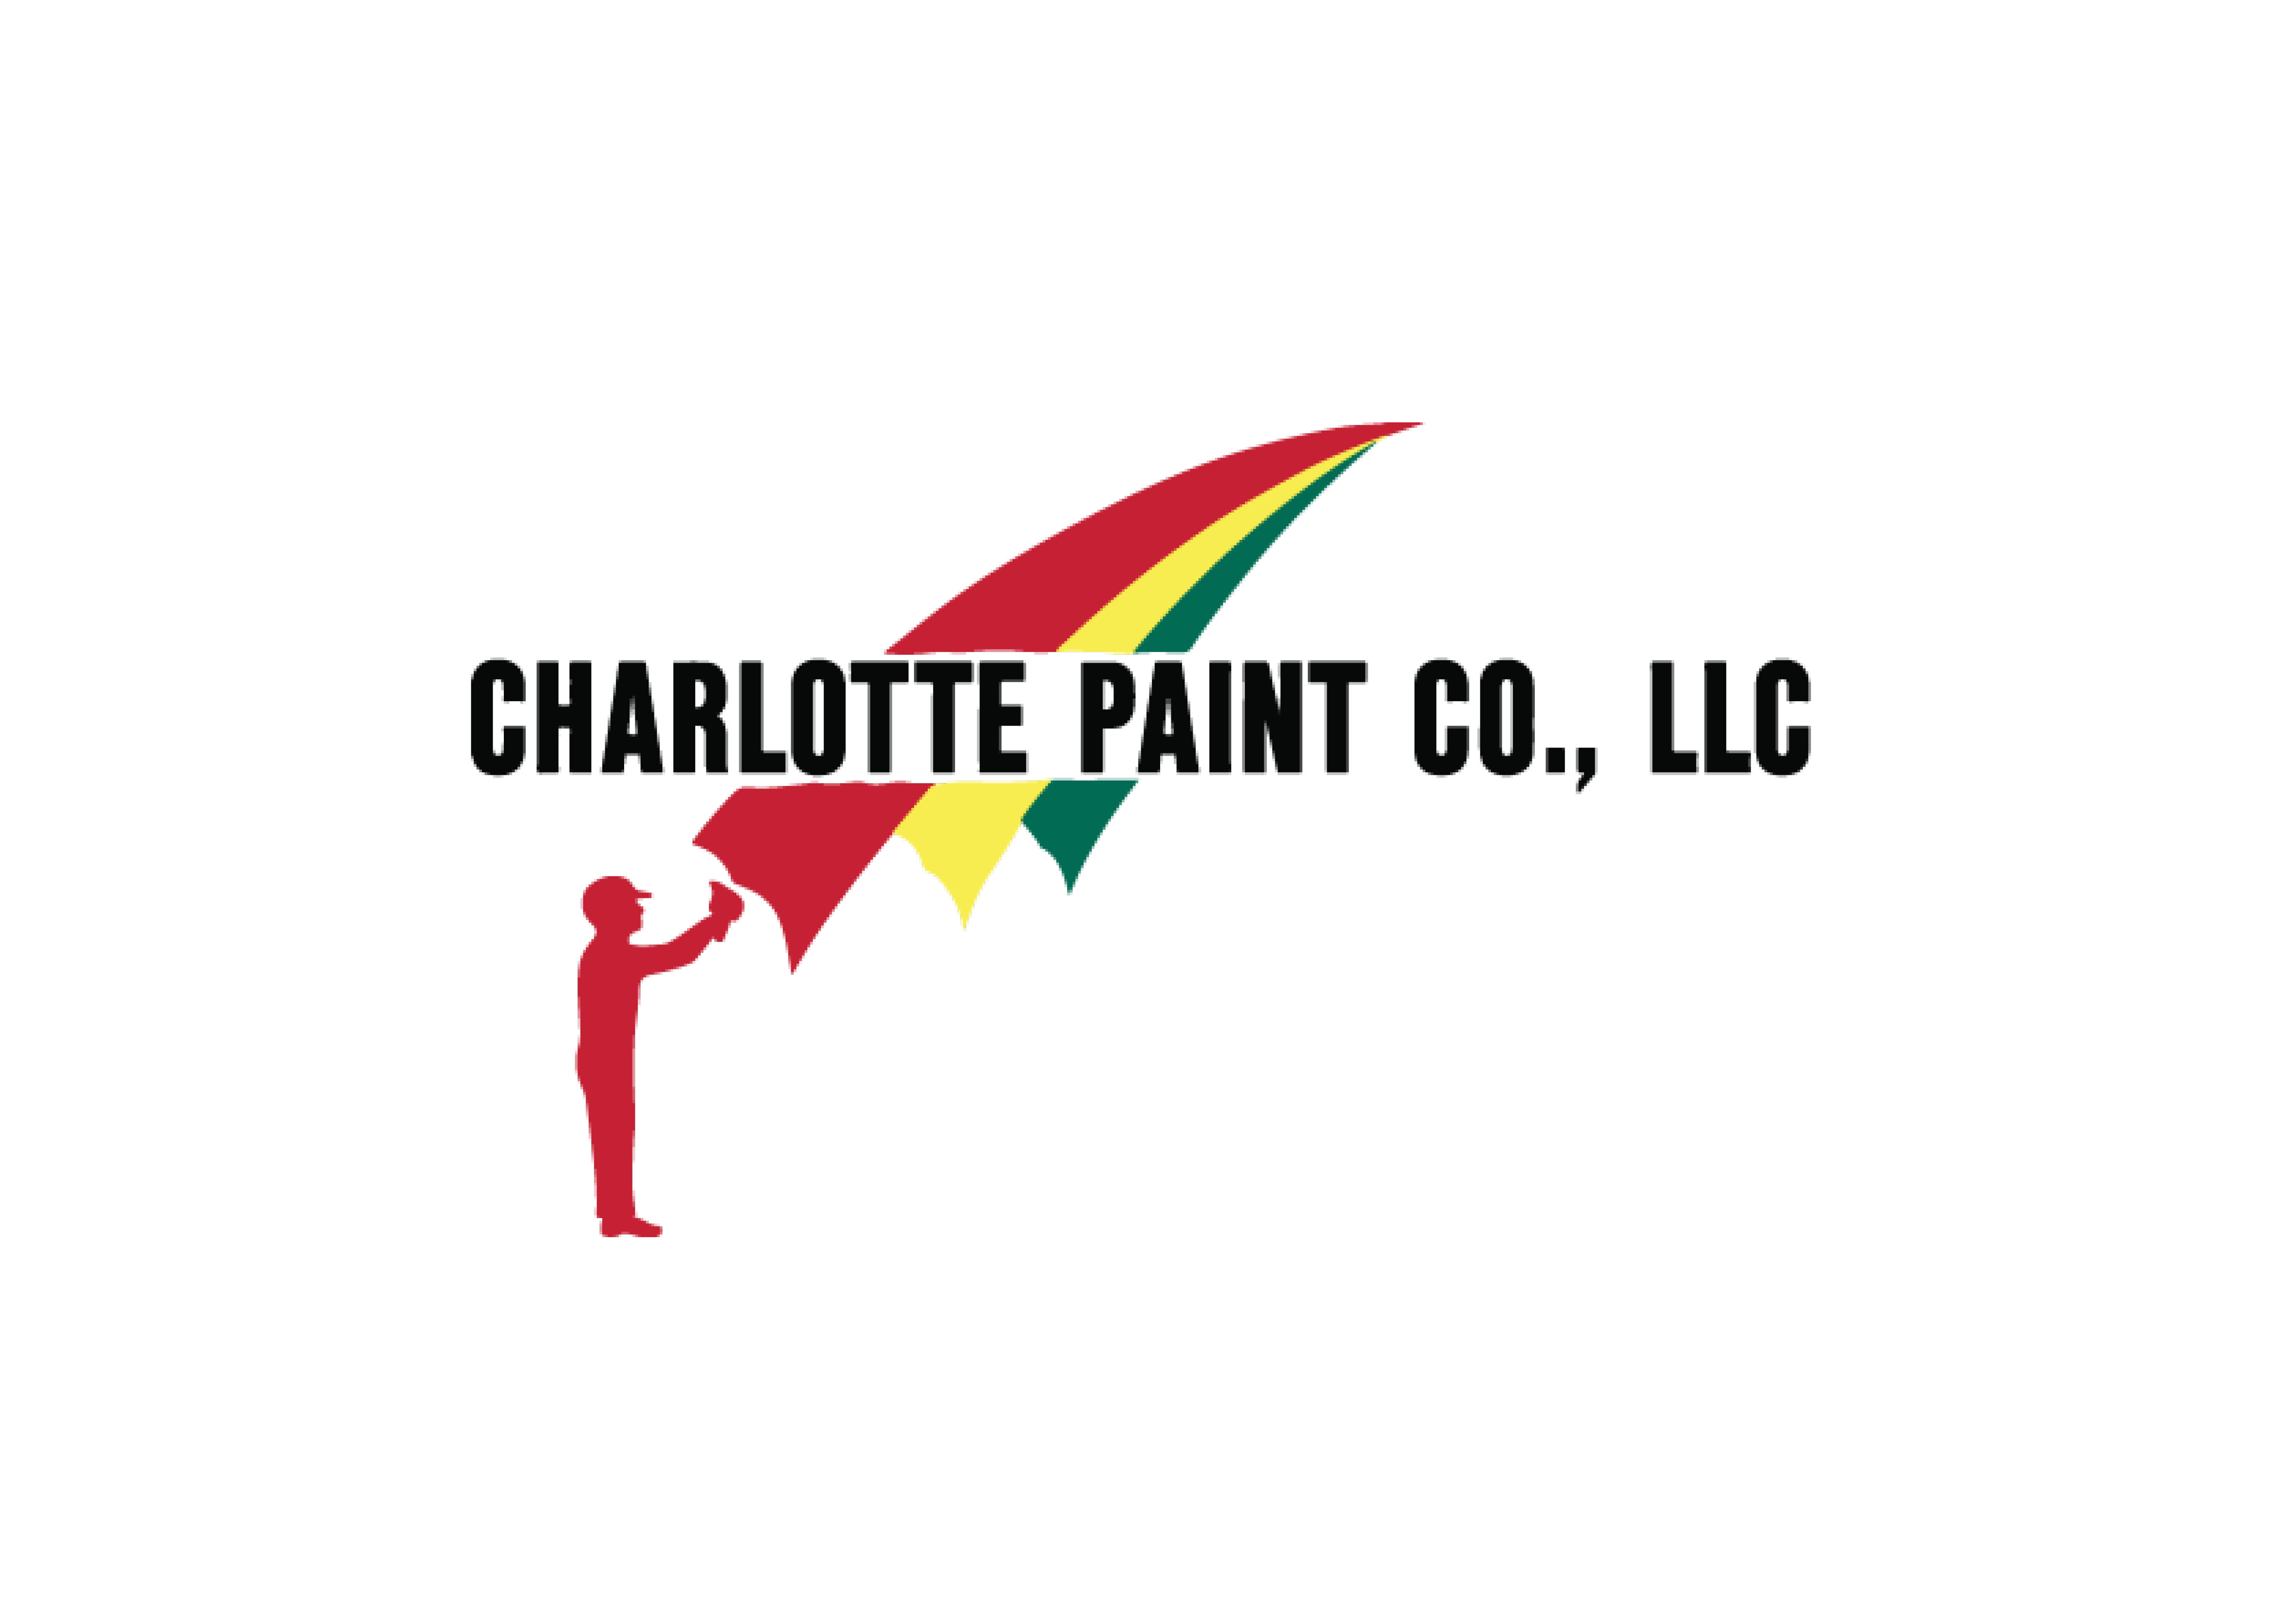 Charlotte Paint Co